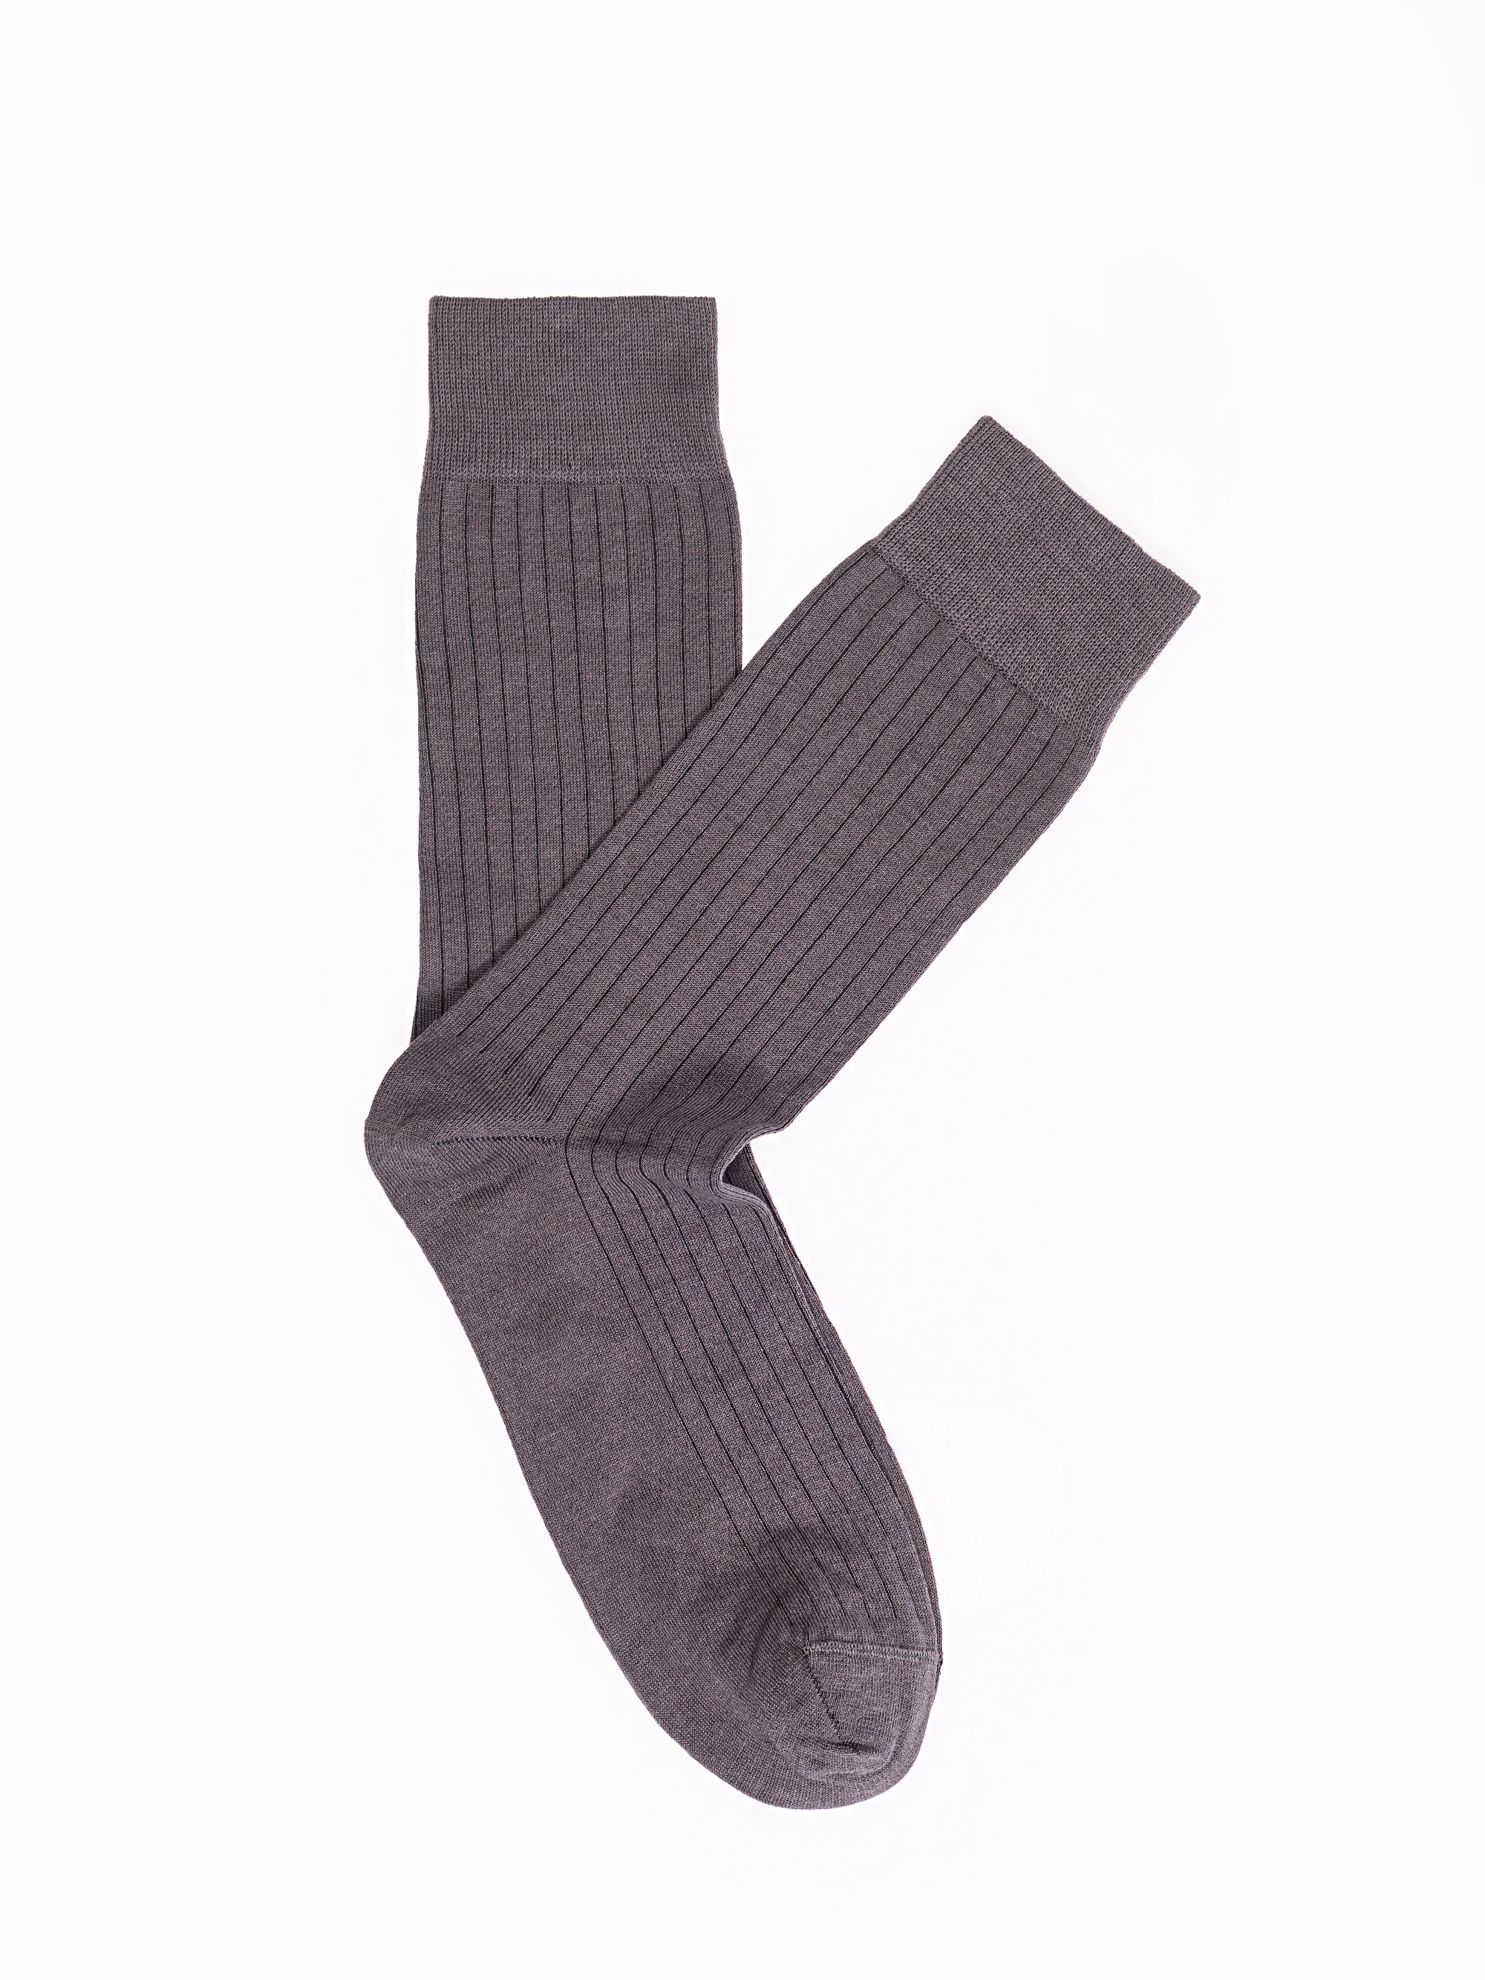 Karaca Erkek Soket Çorap-Antrasit. ürün görseli